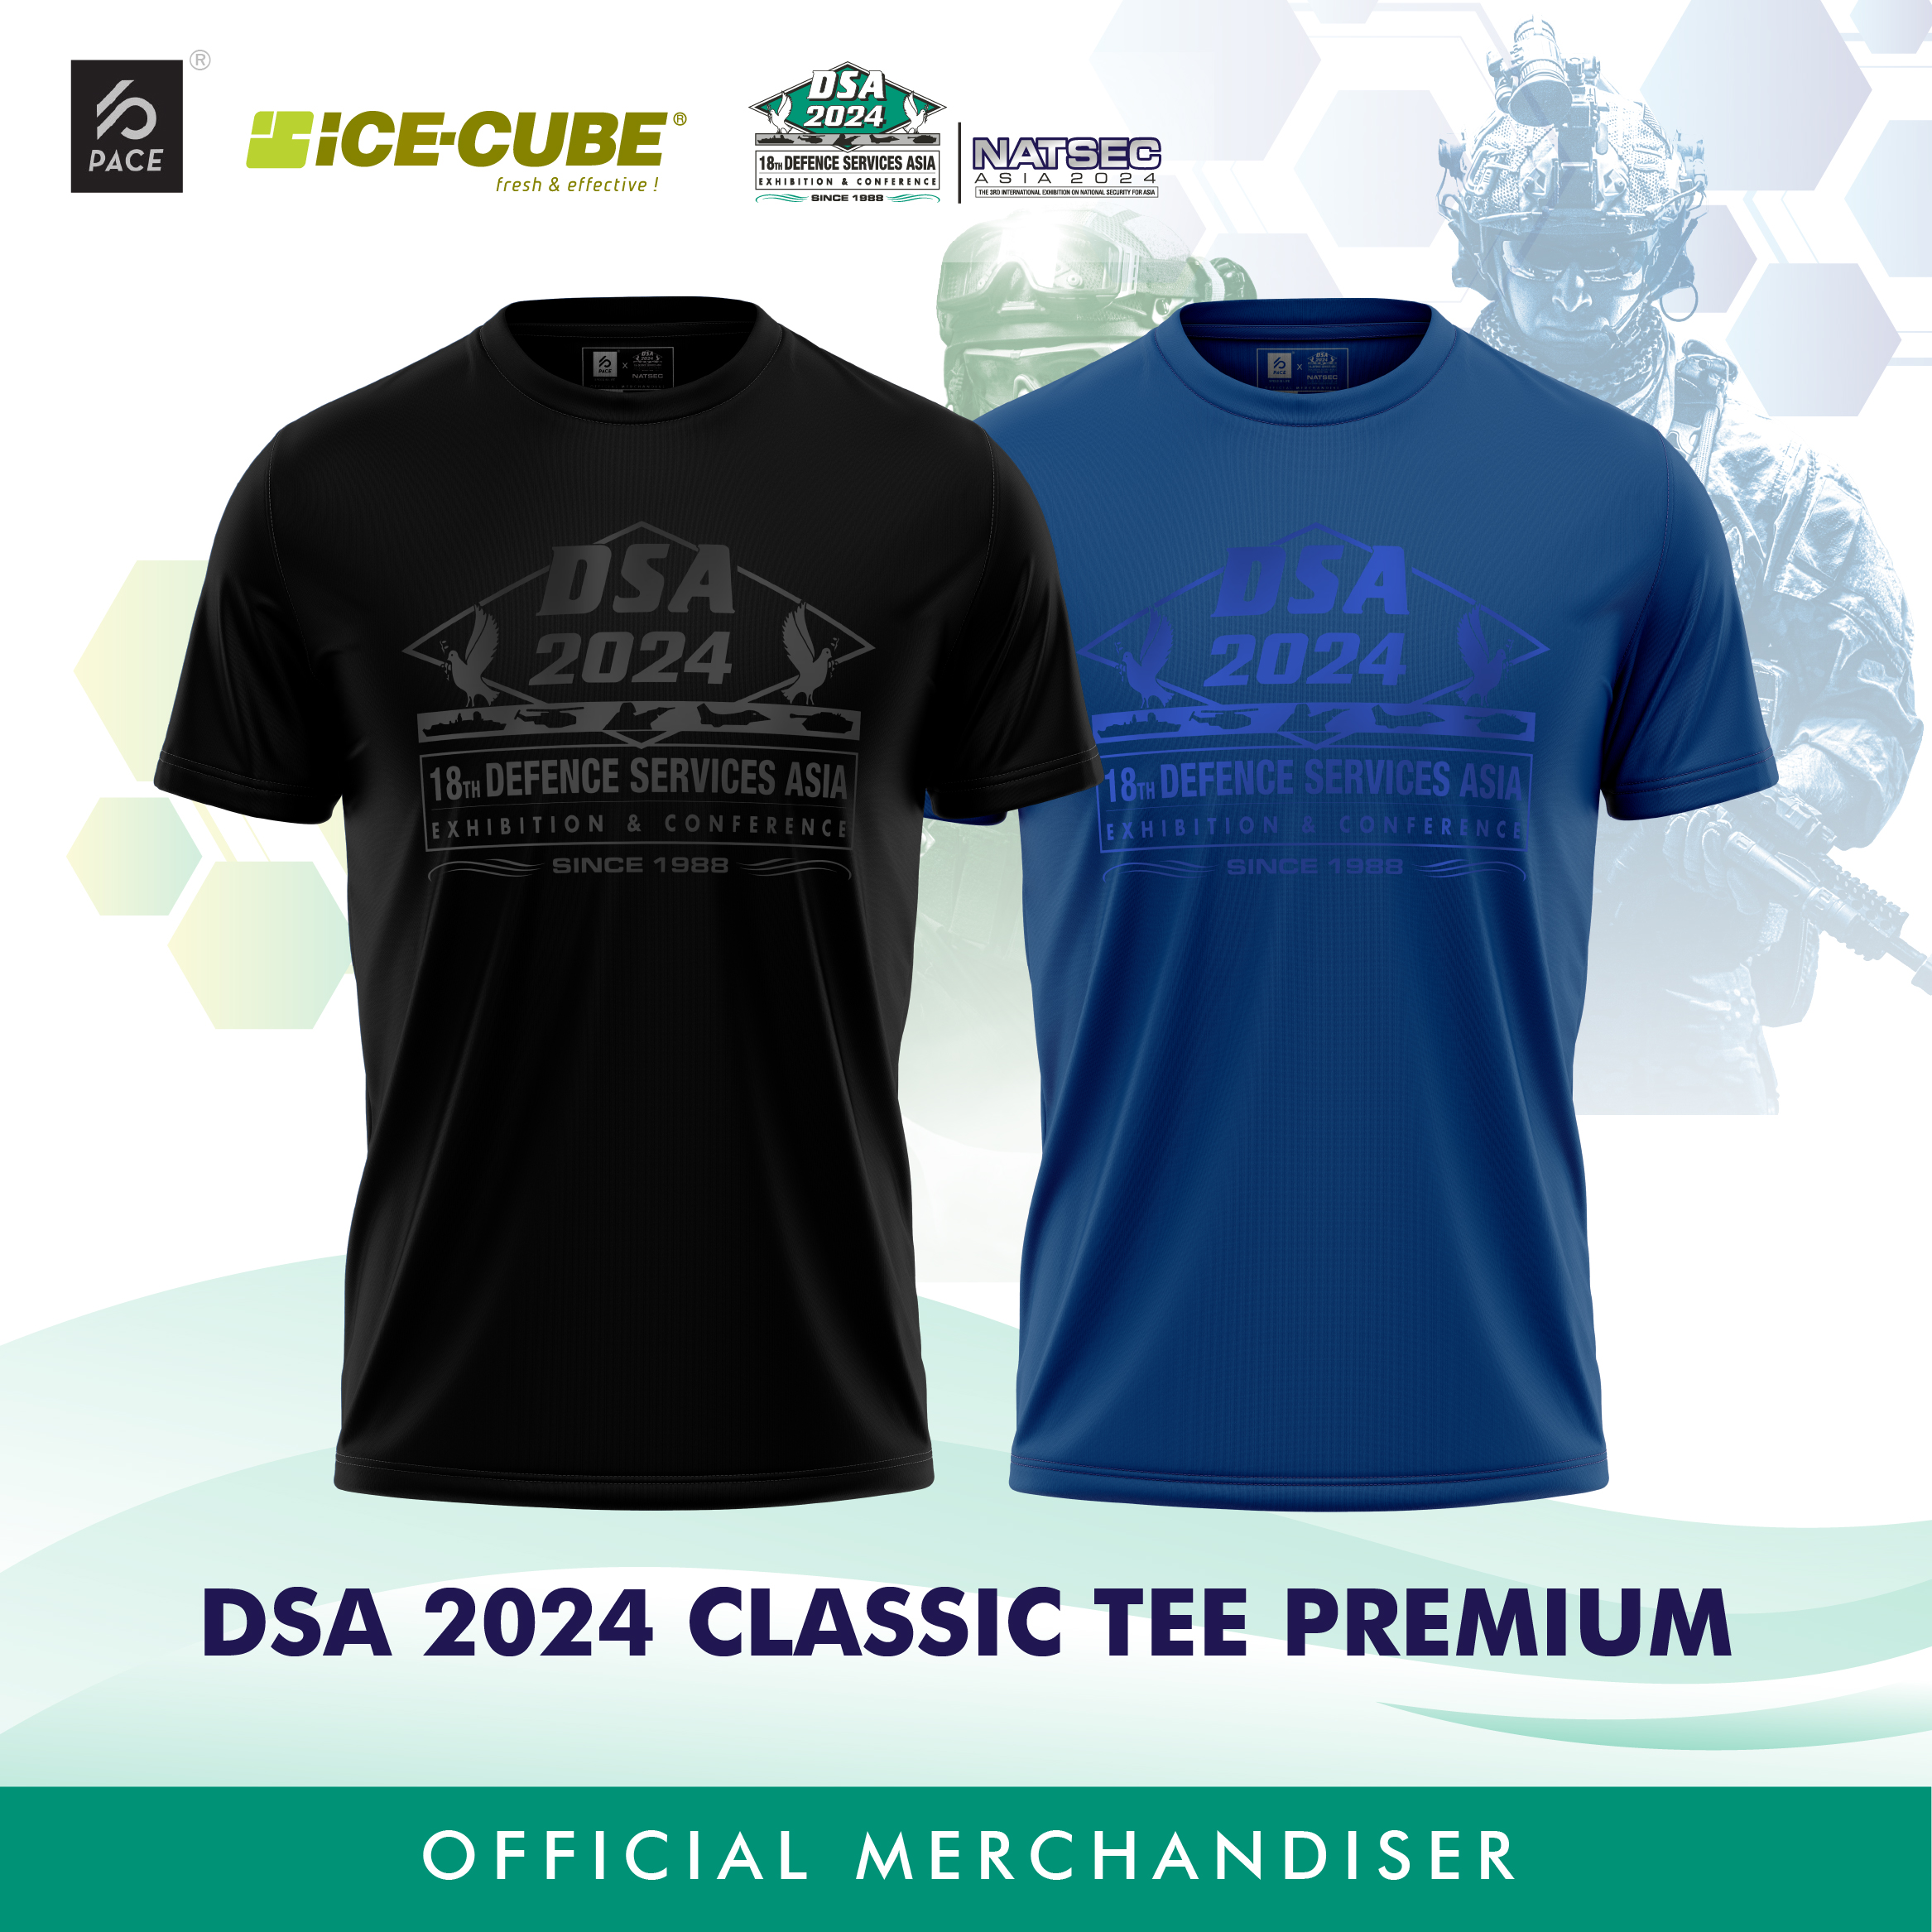 DSA 2024 Premium Classic Tee